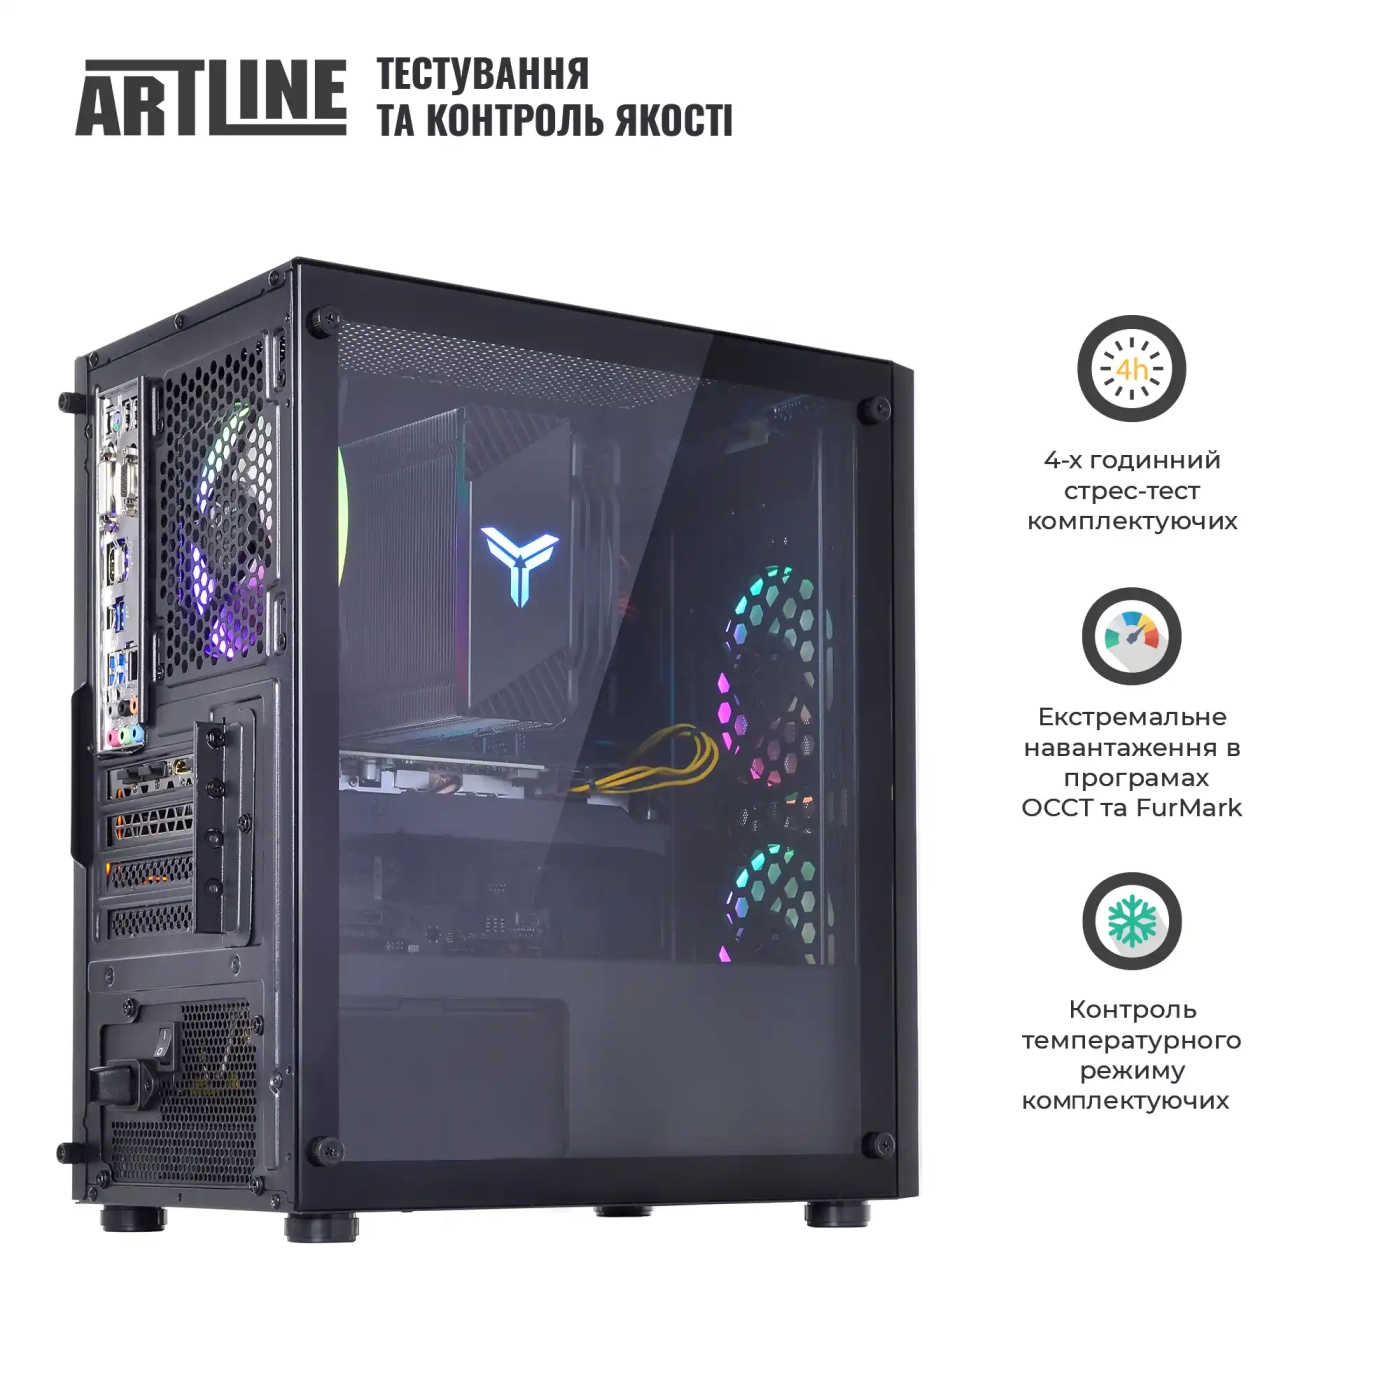 Купить Компьютер ARTLINE Gaming X49v14 - фото 7